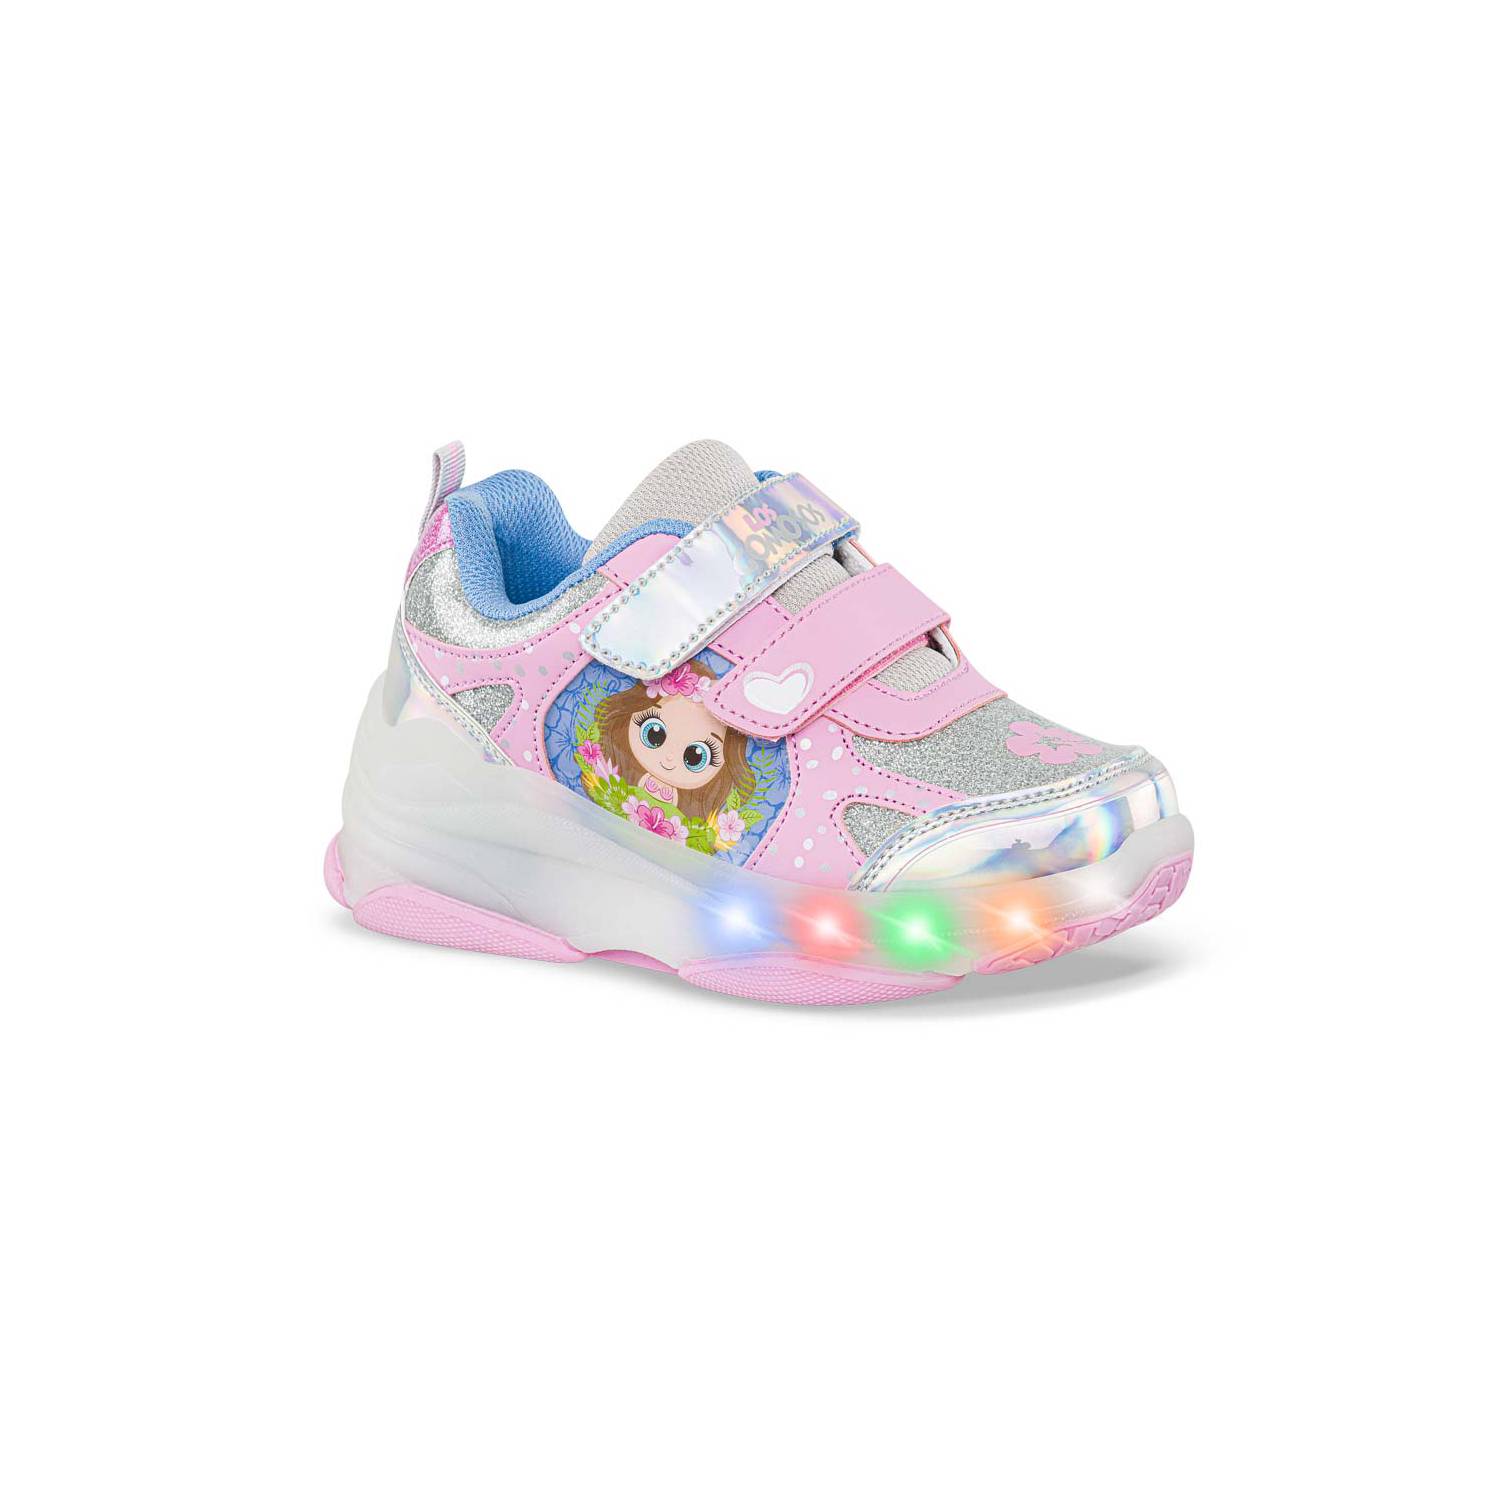 Tenis patines con luces Xixi Rosa-Pla para Niña Los Gomosos LOS GOMOSOS